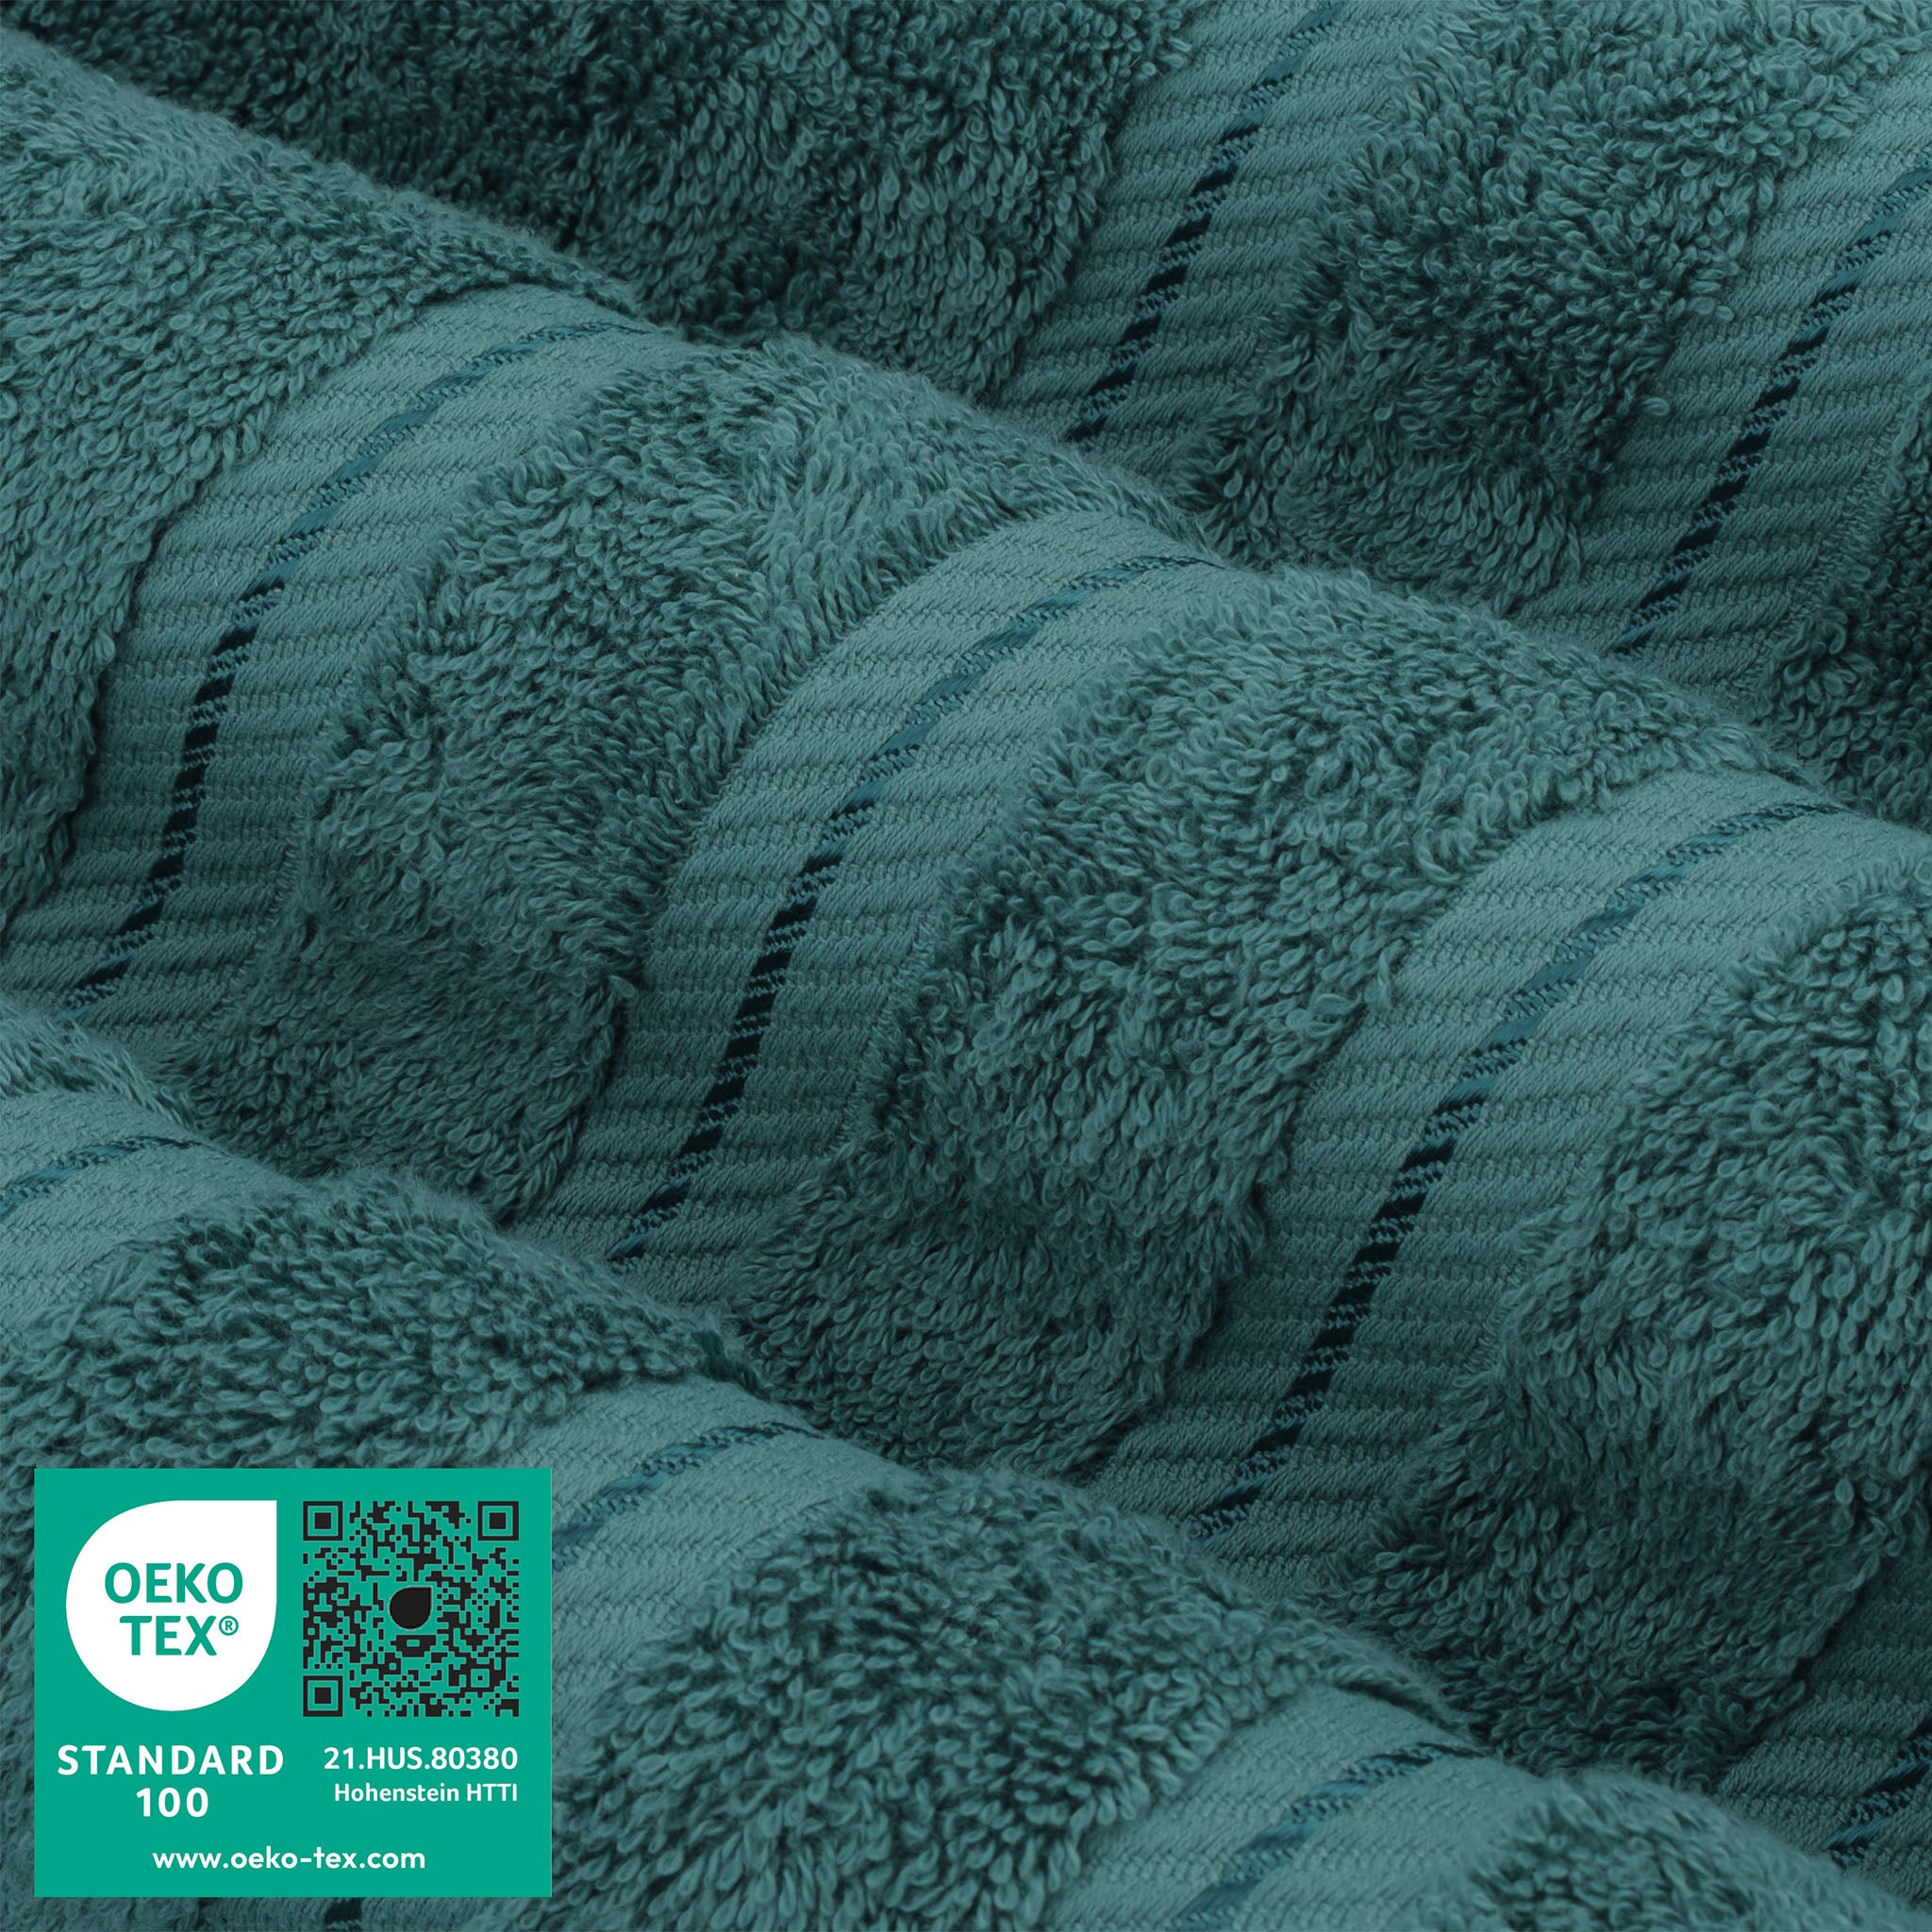 American Soft Linen 100% Turkish Cotton 6 Piece Towel Set Wholesale colonial-blue-3